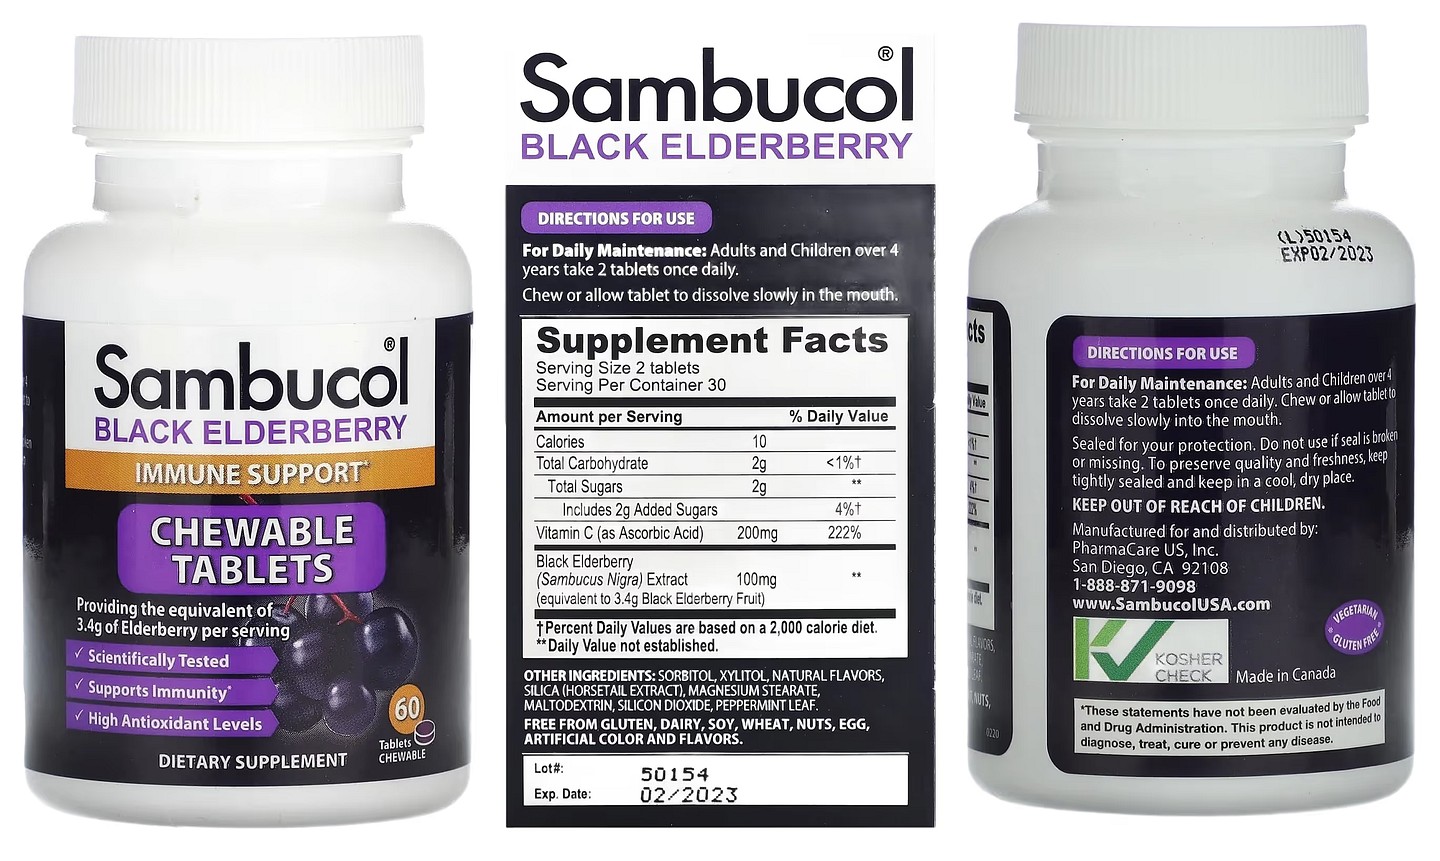 Sambucol, Black Elderberry, Immune Support packaging